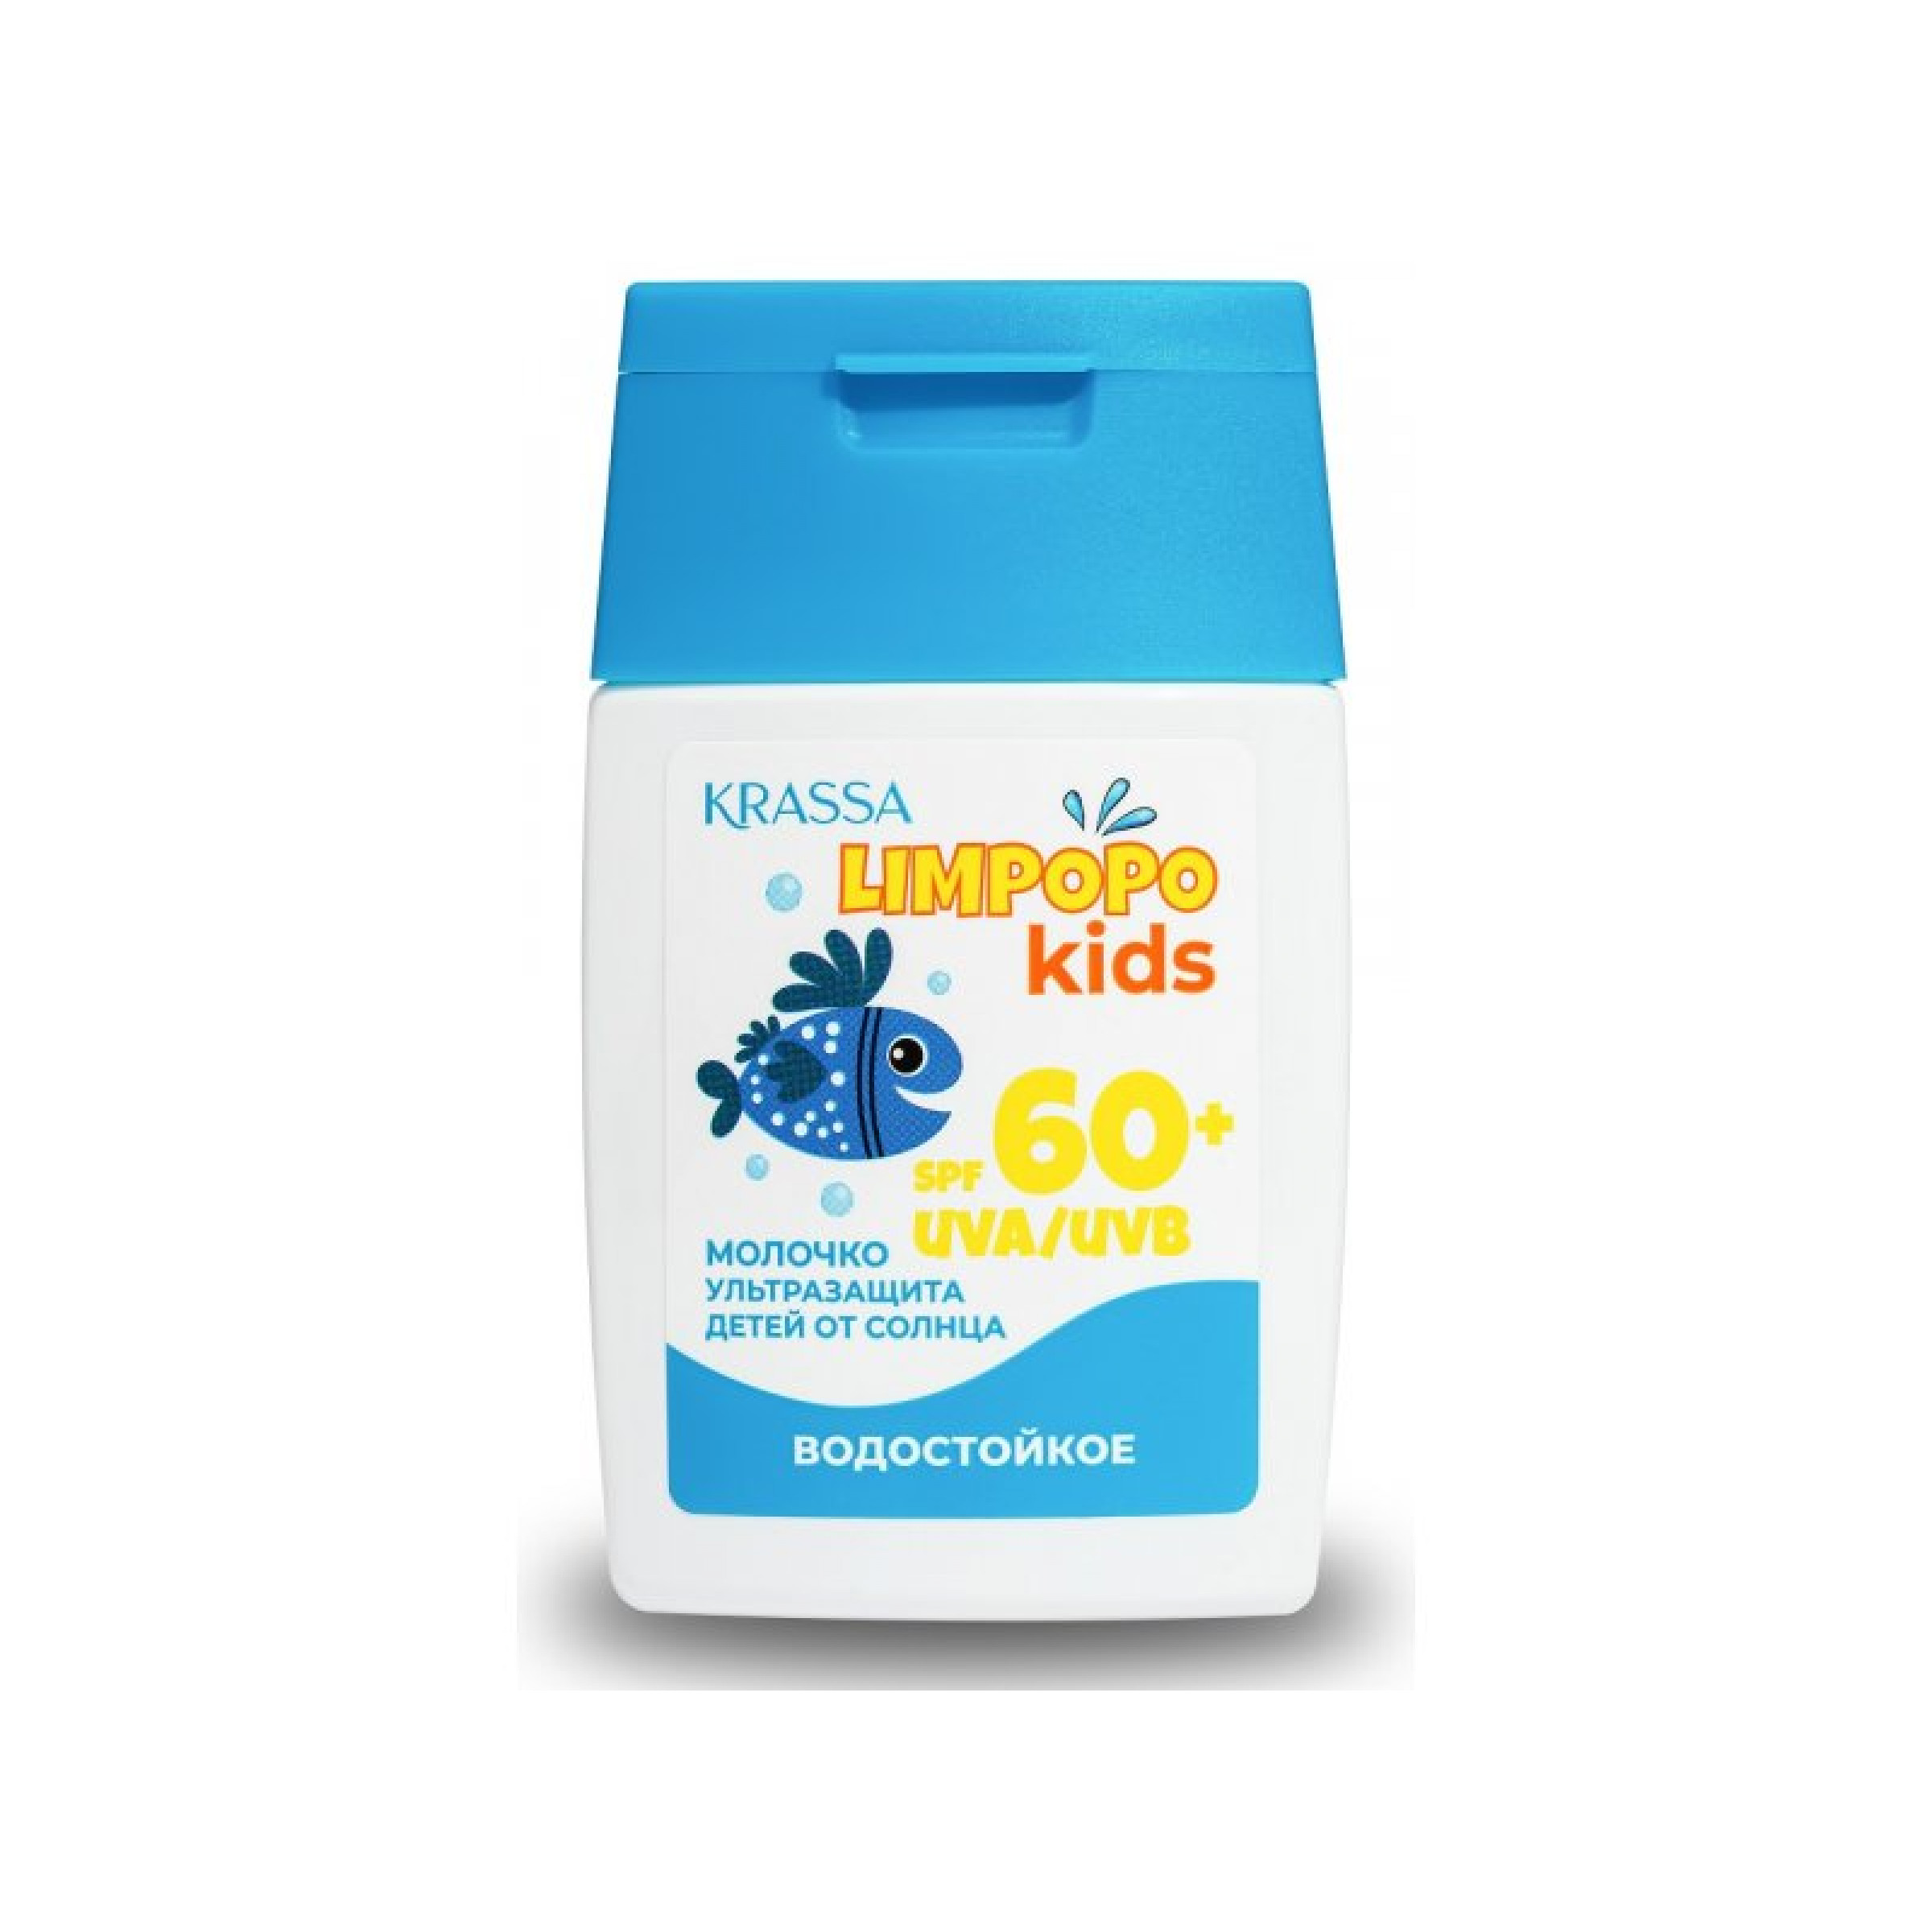 Молочко для защиты детей от солнца Krassa Limpopo Kids SPF 60, 50 мл